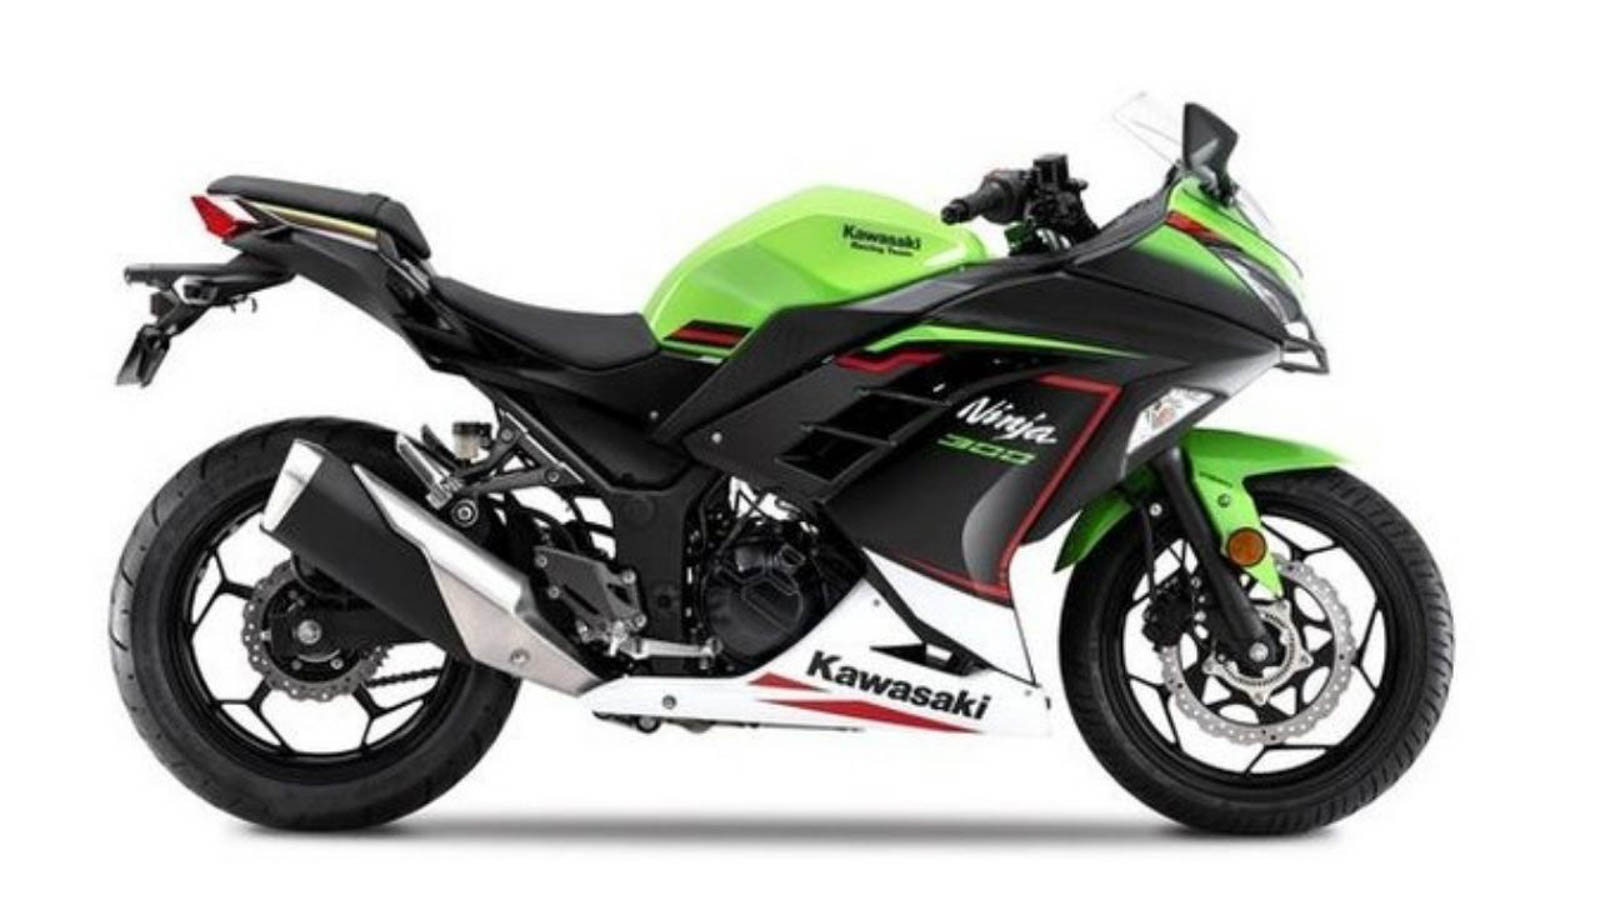 2021 Kawasaki Ninja 300 BS6 Unveiled; India Launch Soon